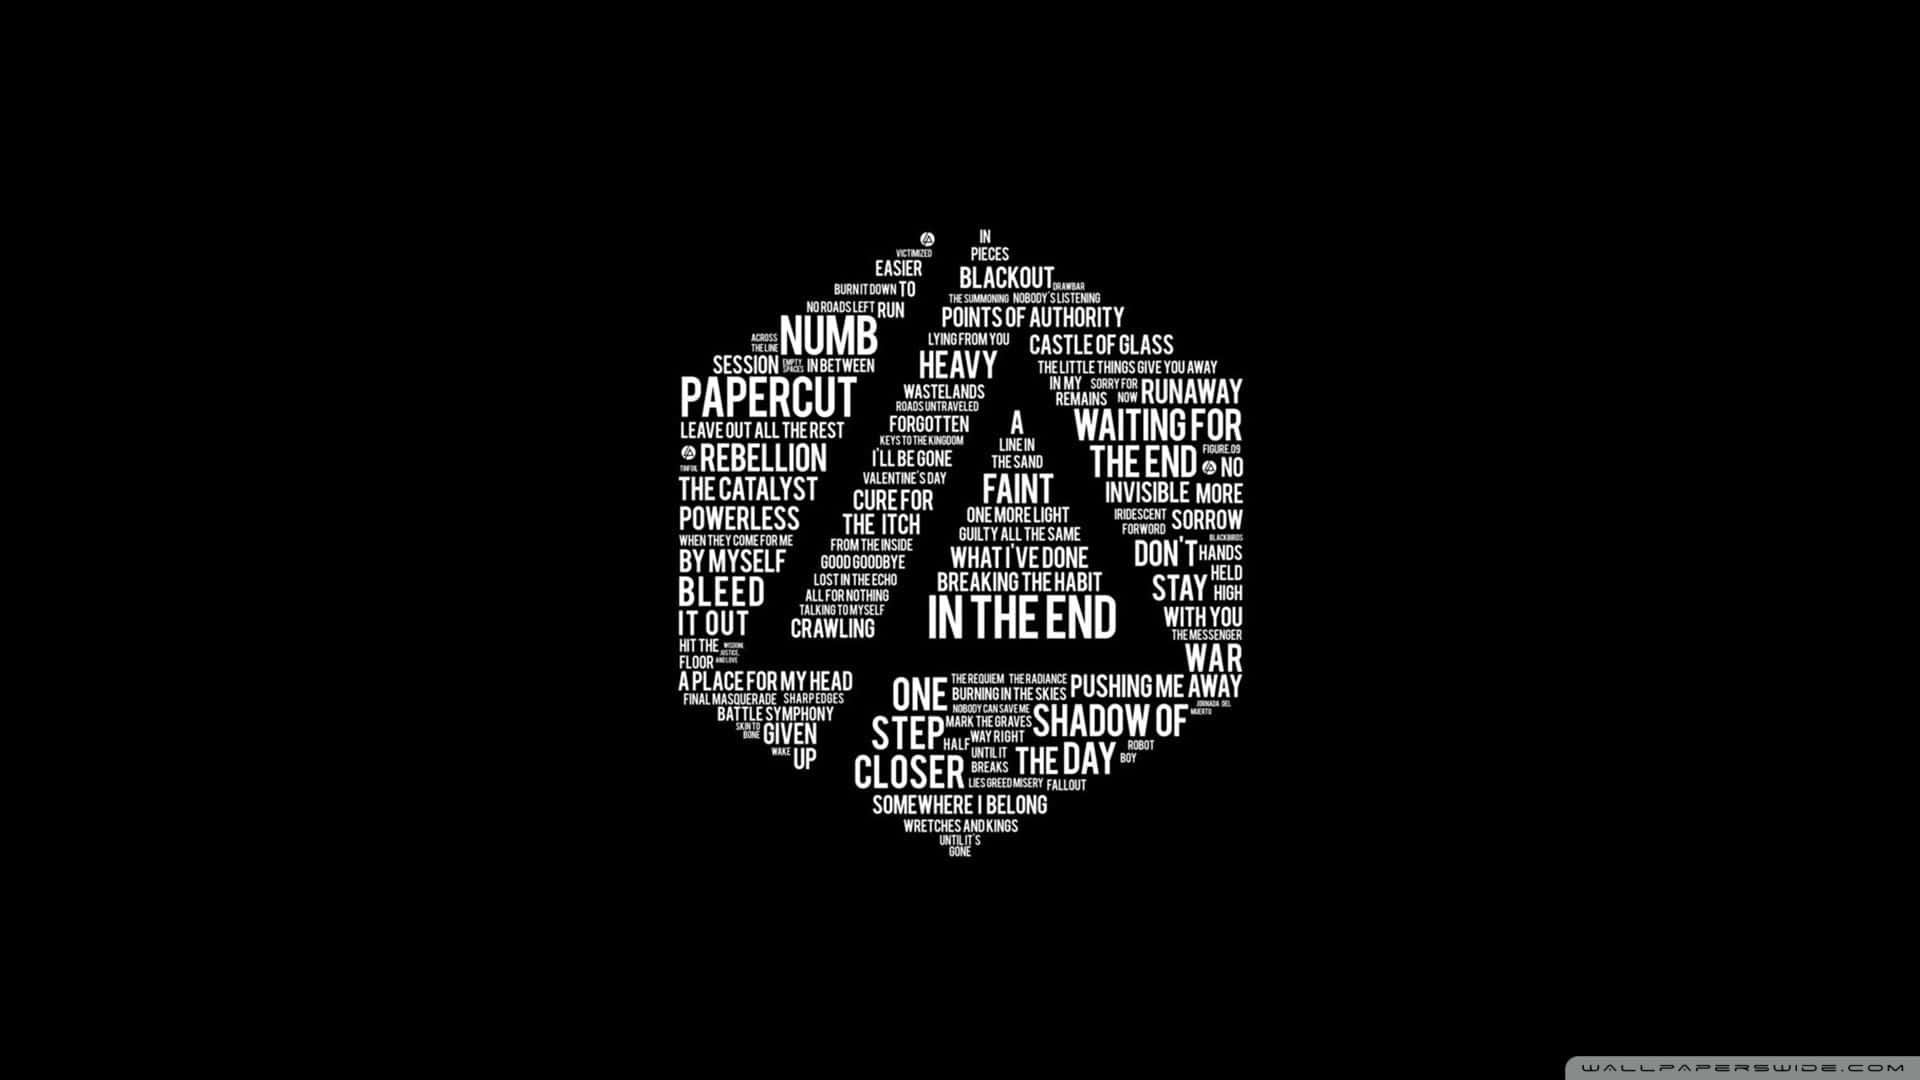 Zeigensie Ihre Unterstützung Für Linkin Park Mit Diesem Beeindruckenden 4k-wallpaper! Wallpaper